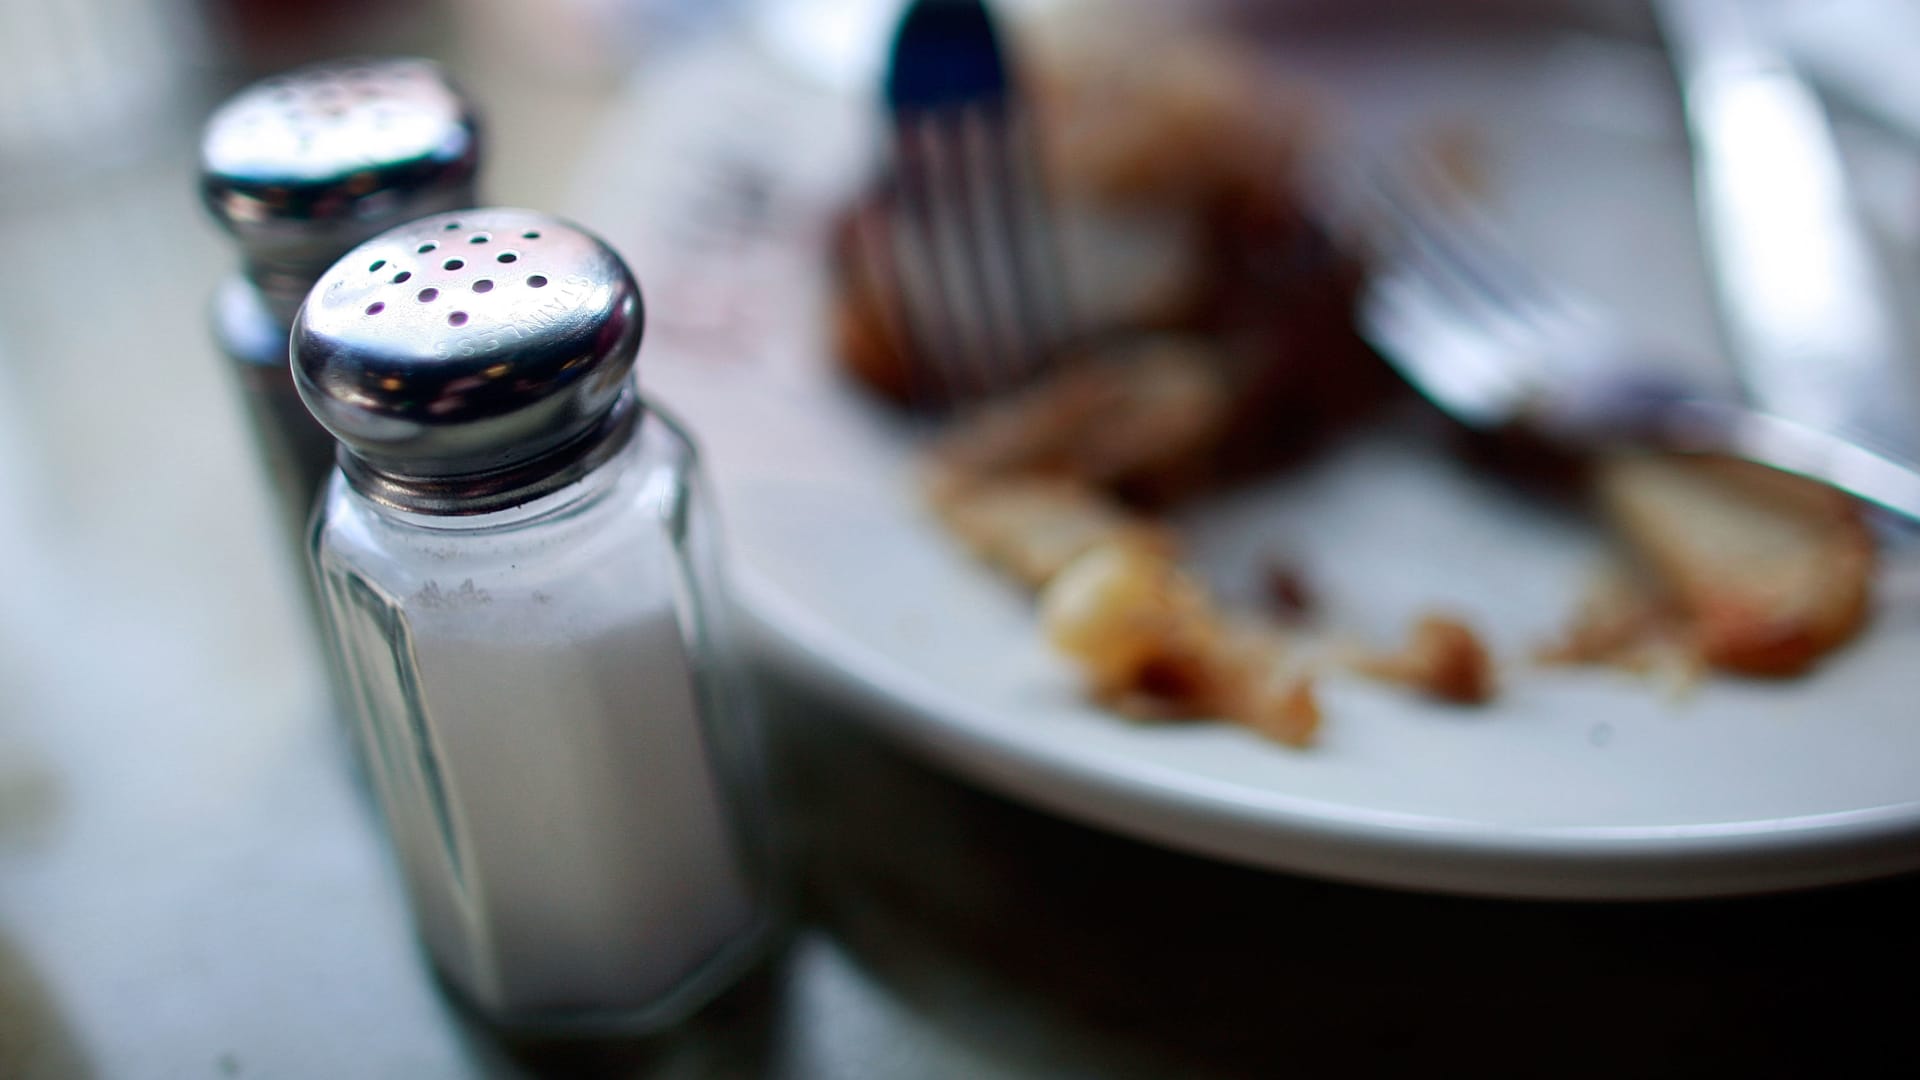 هل تحب اضافة الملح الى طعامك؟ قد تزيد هذه العادة من خطر إصابتك بقصور القلب